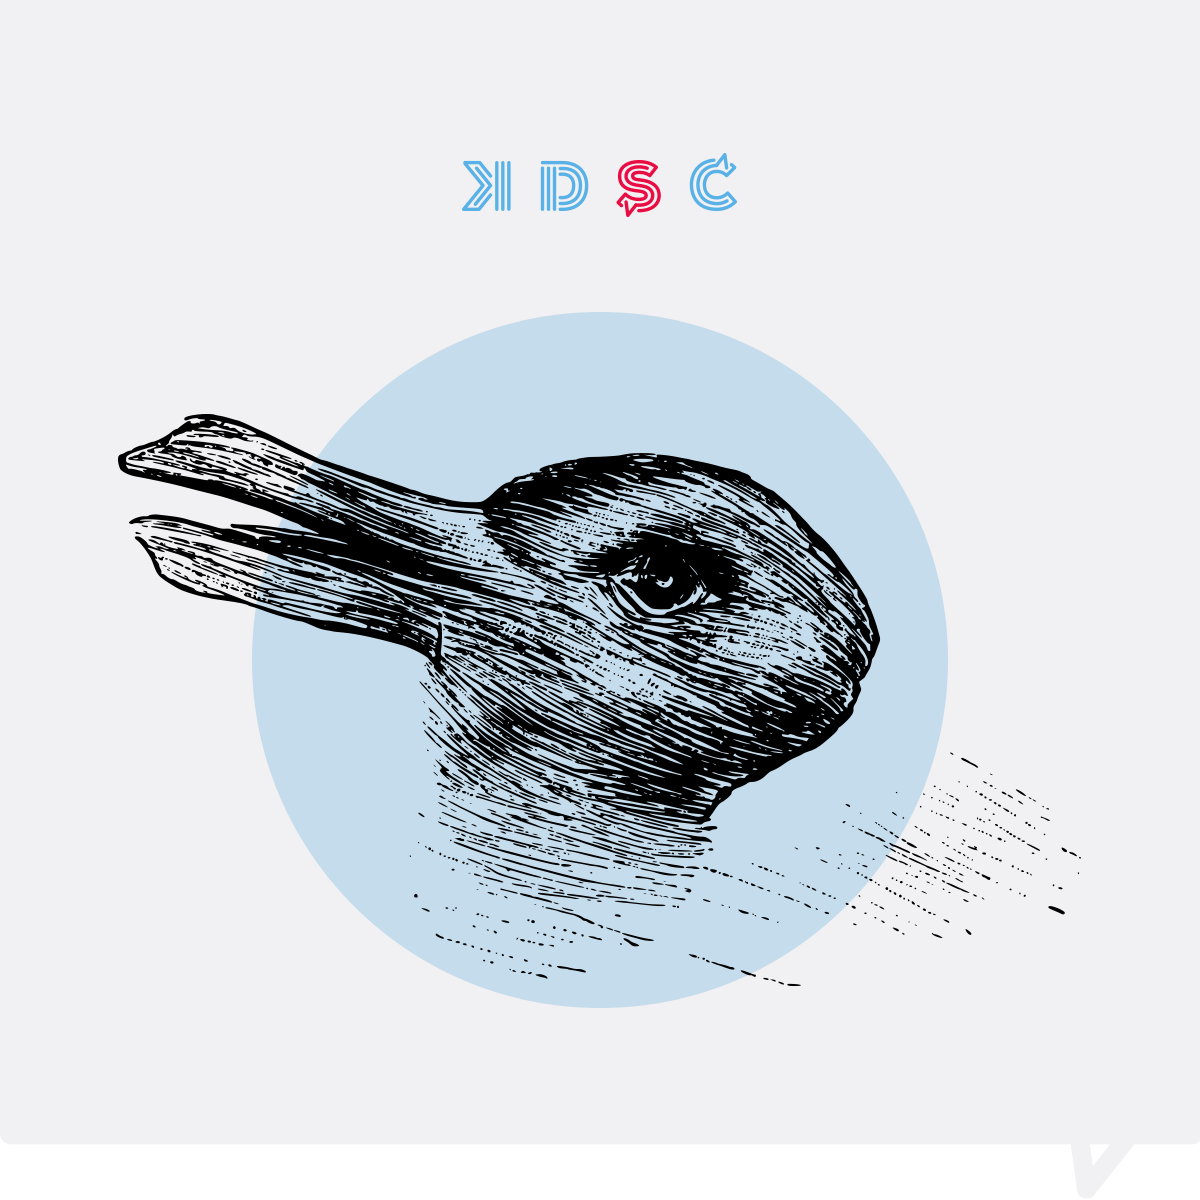 KSDC-rabbit-duckLI